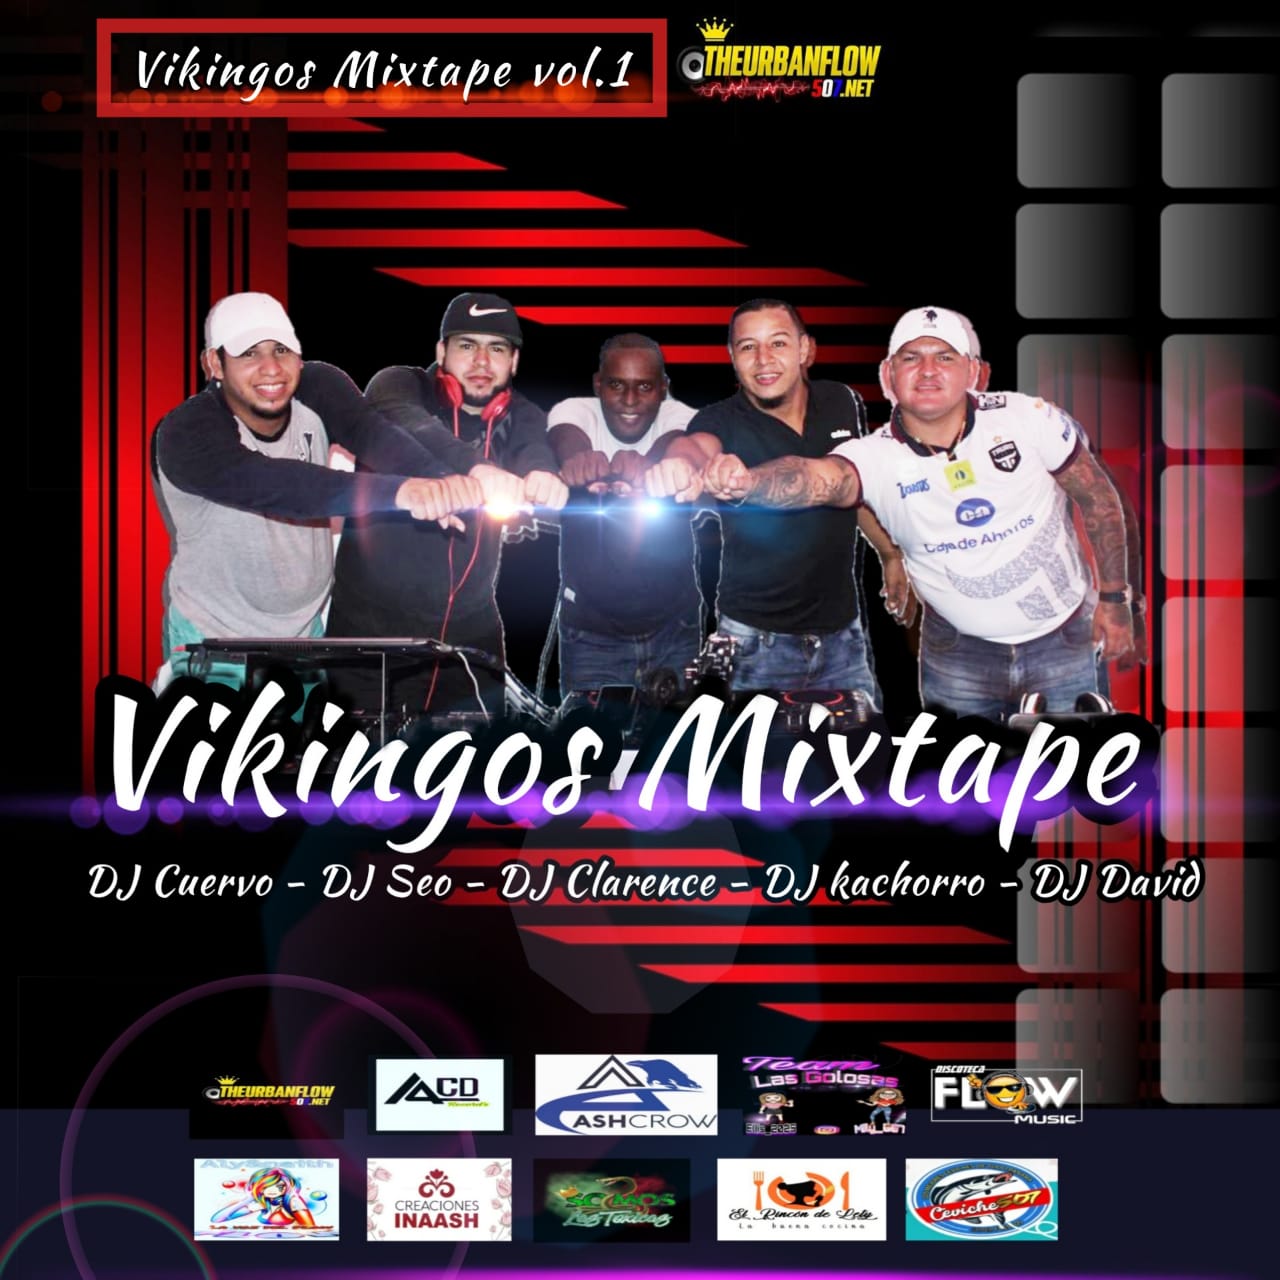 VIKINGOS MIXTAPE VOL. 1 (LIVE) - LOS DJS DE PEDREGAL CITY - DJ CUERVO - DJSEO - DJKACHORRO - DJCLARENCE - DJDAVID